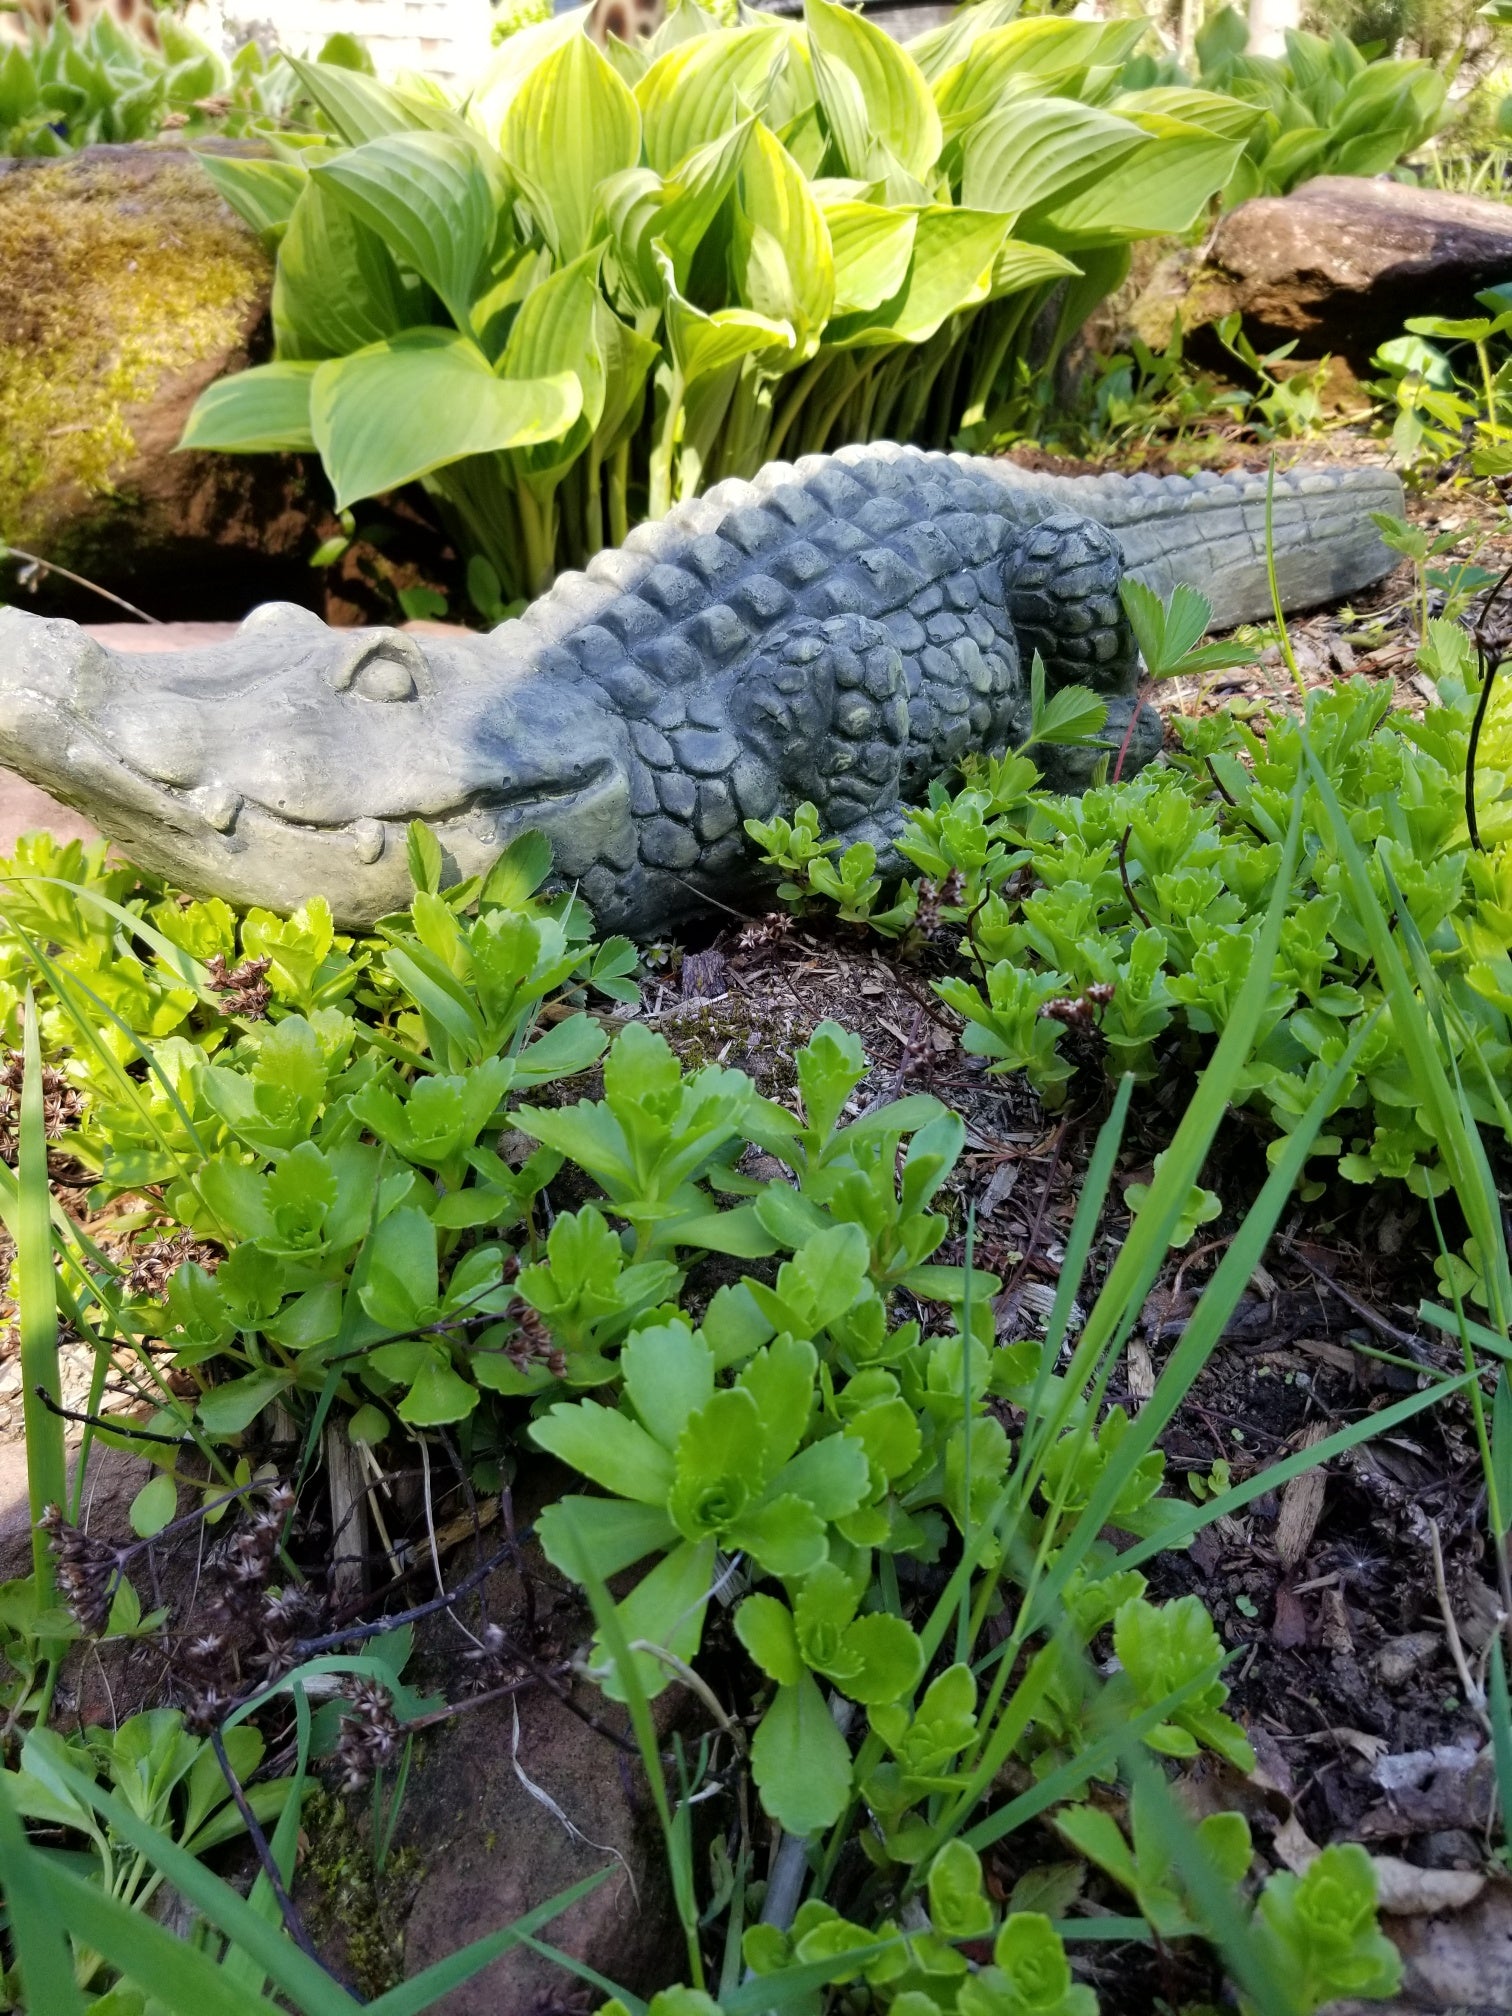 small alligator statue for sale